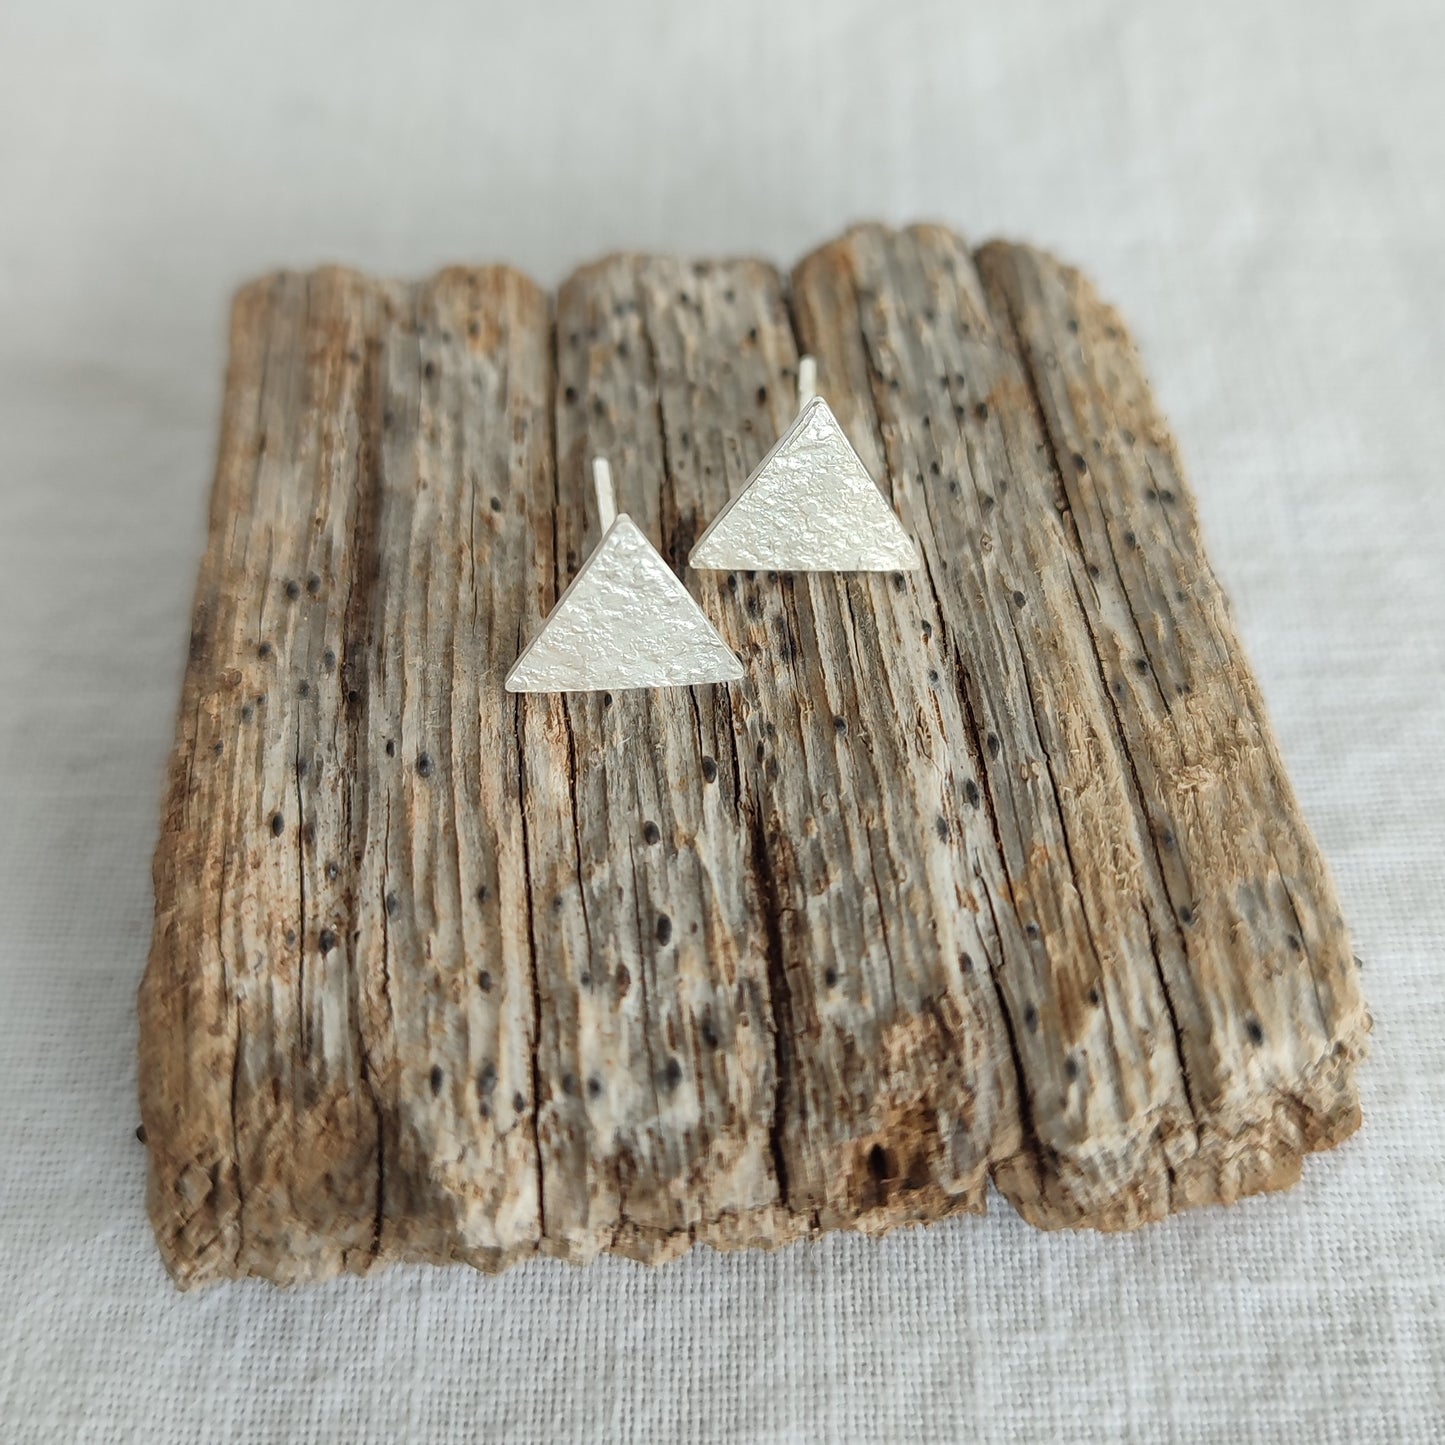 Micro Triangles 0.39"/ 1 cm